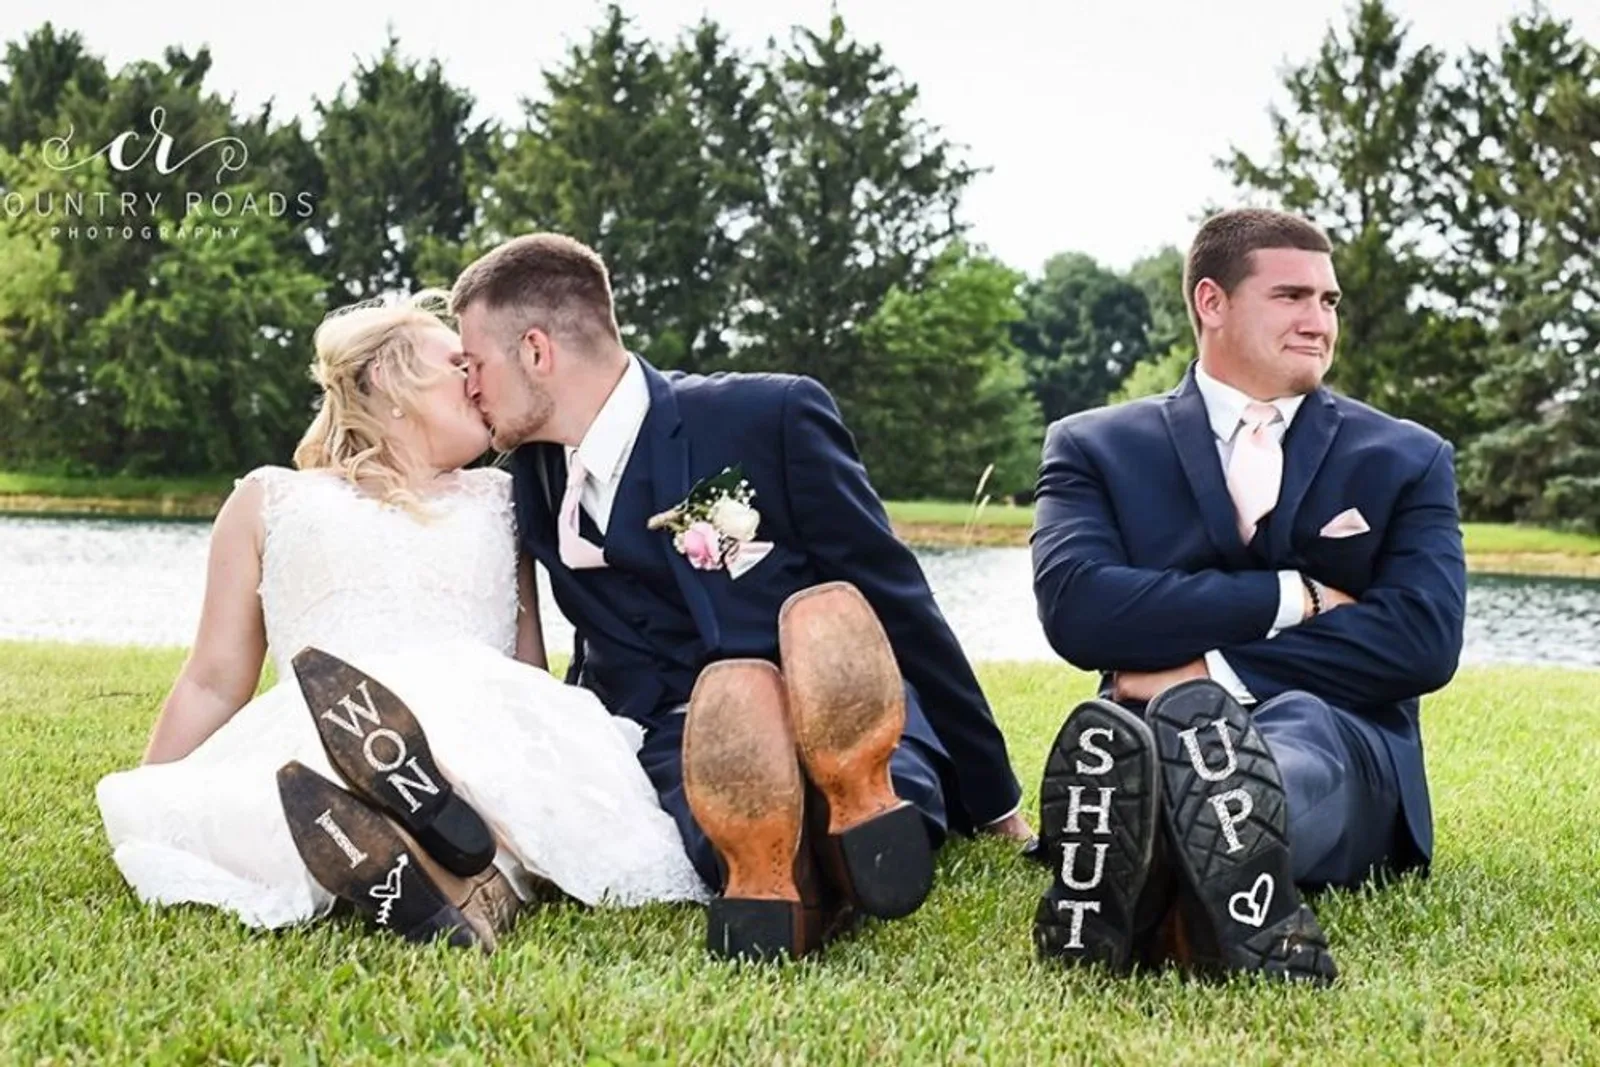 Kocak! Ini 12 Foto Pernikahan yang Menggelitik dan Nggak Disangka